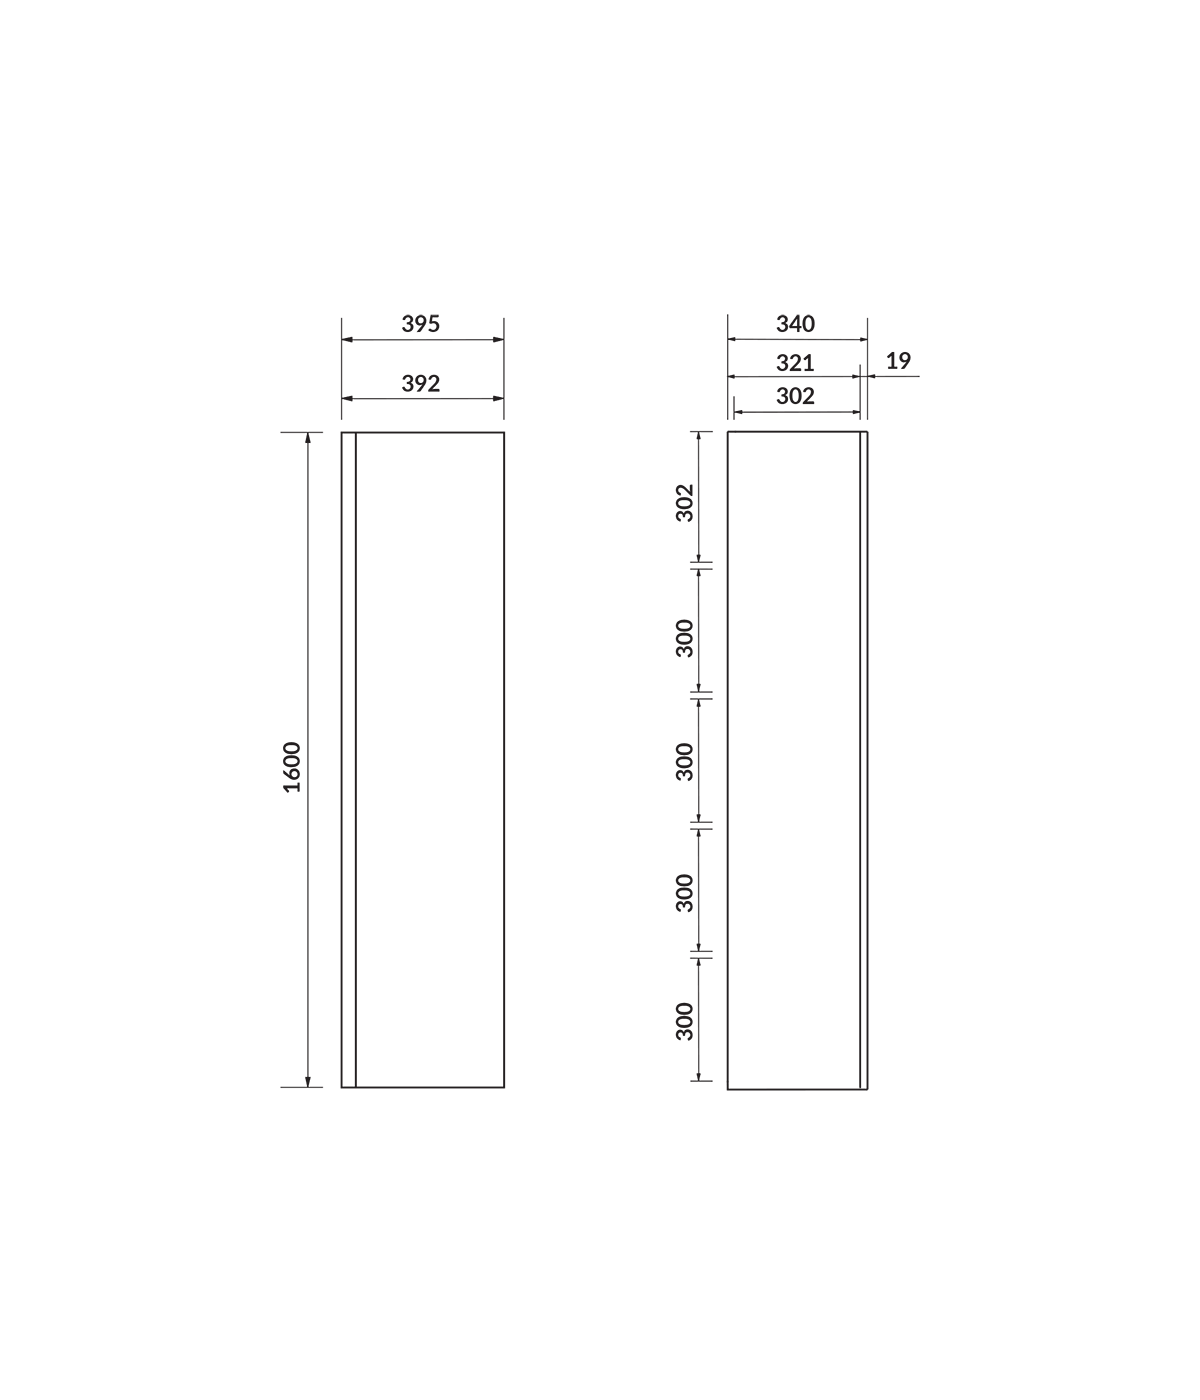 Badezimmer Hochhängeschrank MODUO 160 Hochschrank Türen, Grau mit Spiegel